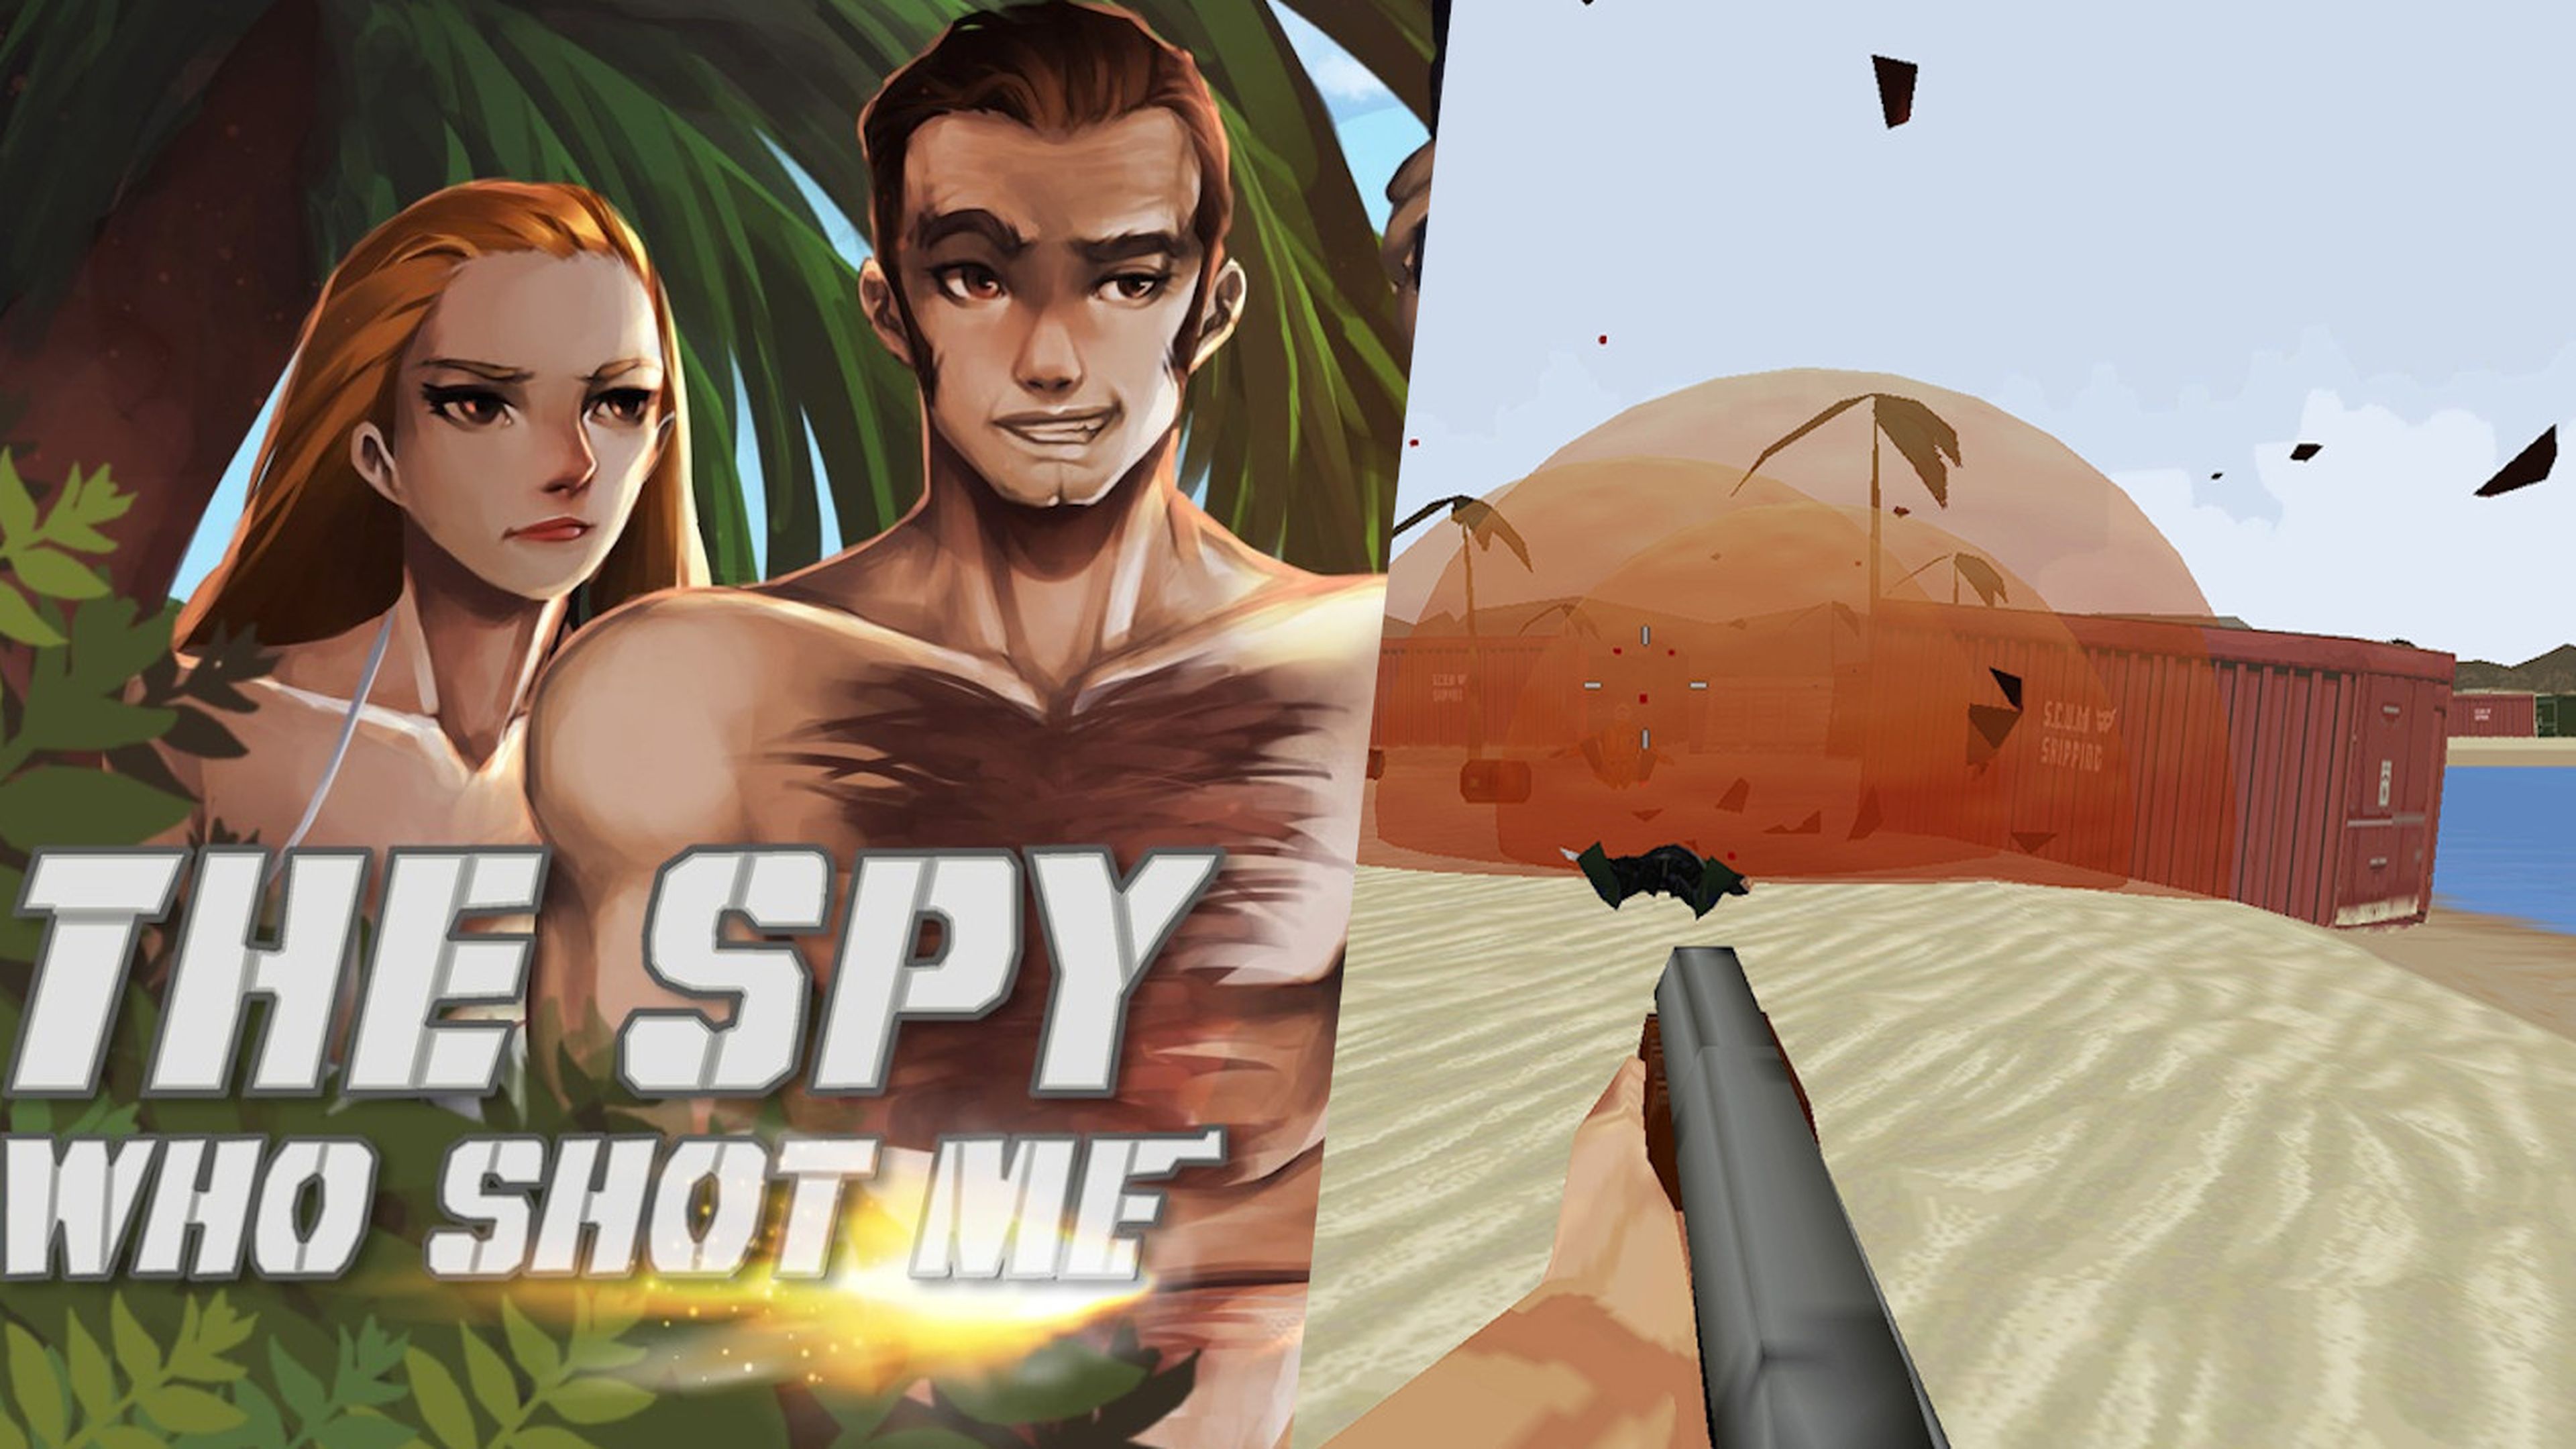 The Spy Who Shot Me